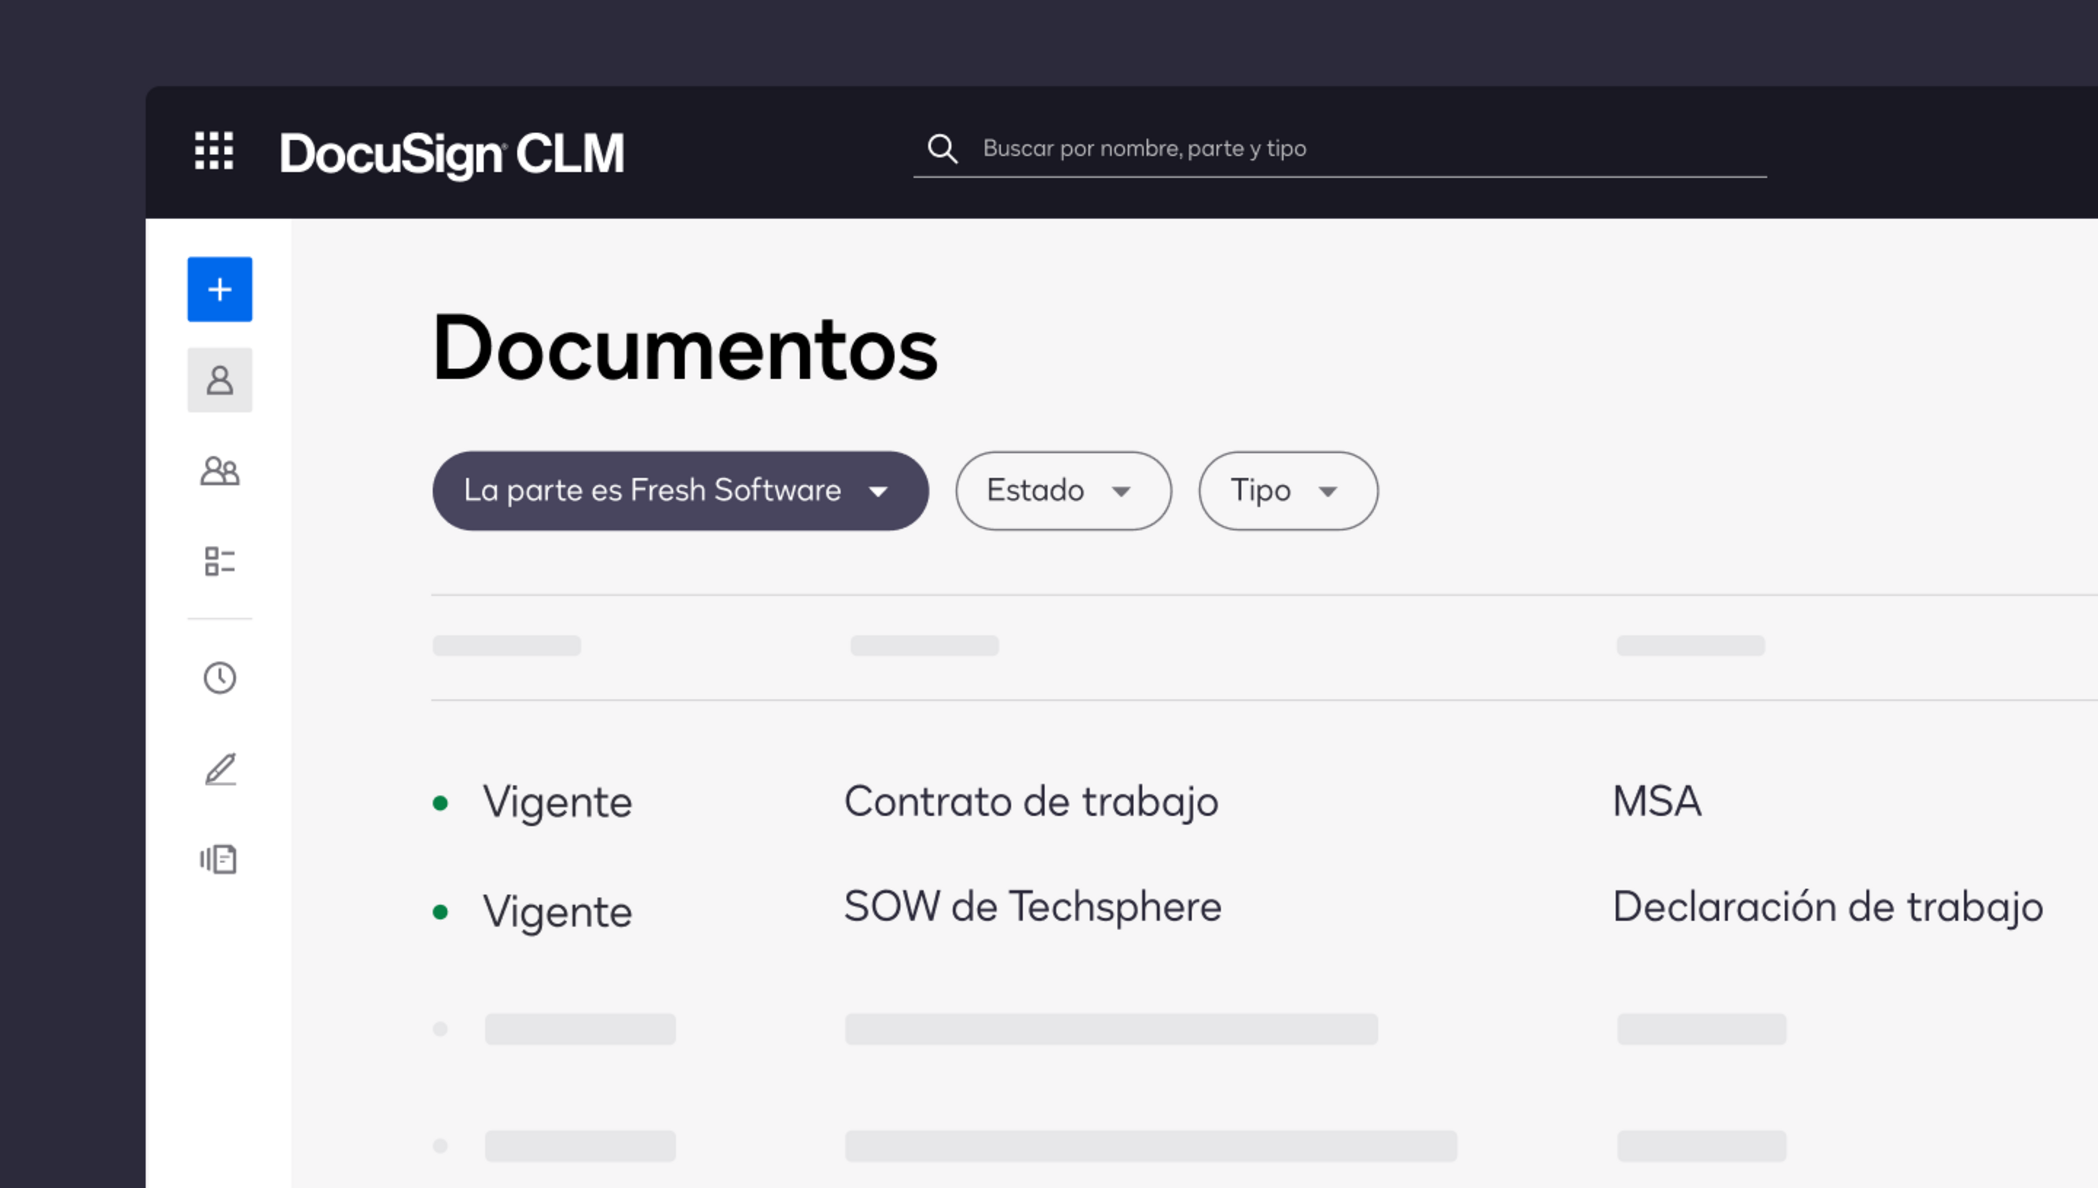 Imagen de producto de CLM que muestra todos los contratos en una ubicación centralizada.